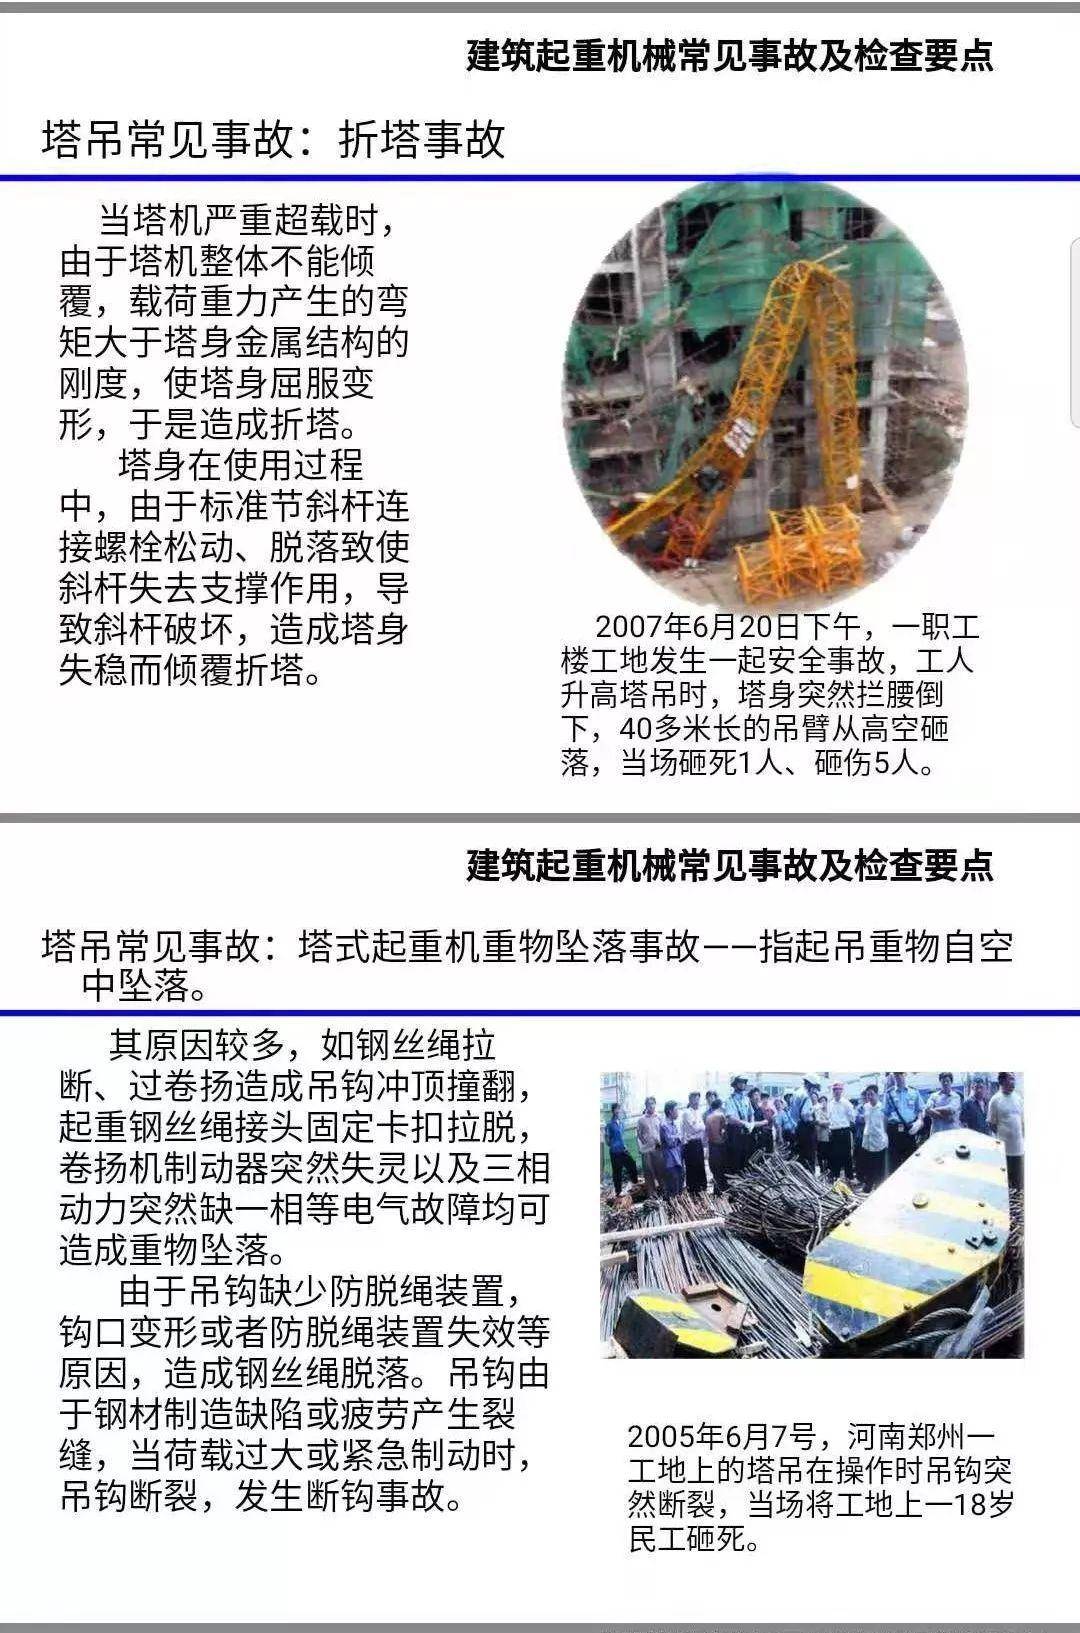 山东潍坊一在建工地两台塔吊发生倒塌事故,附:五类常见塔吊事故案例